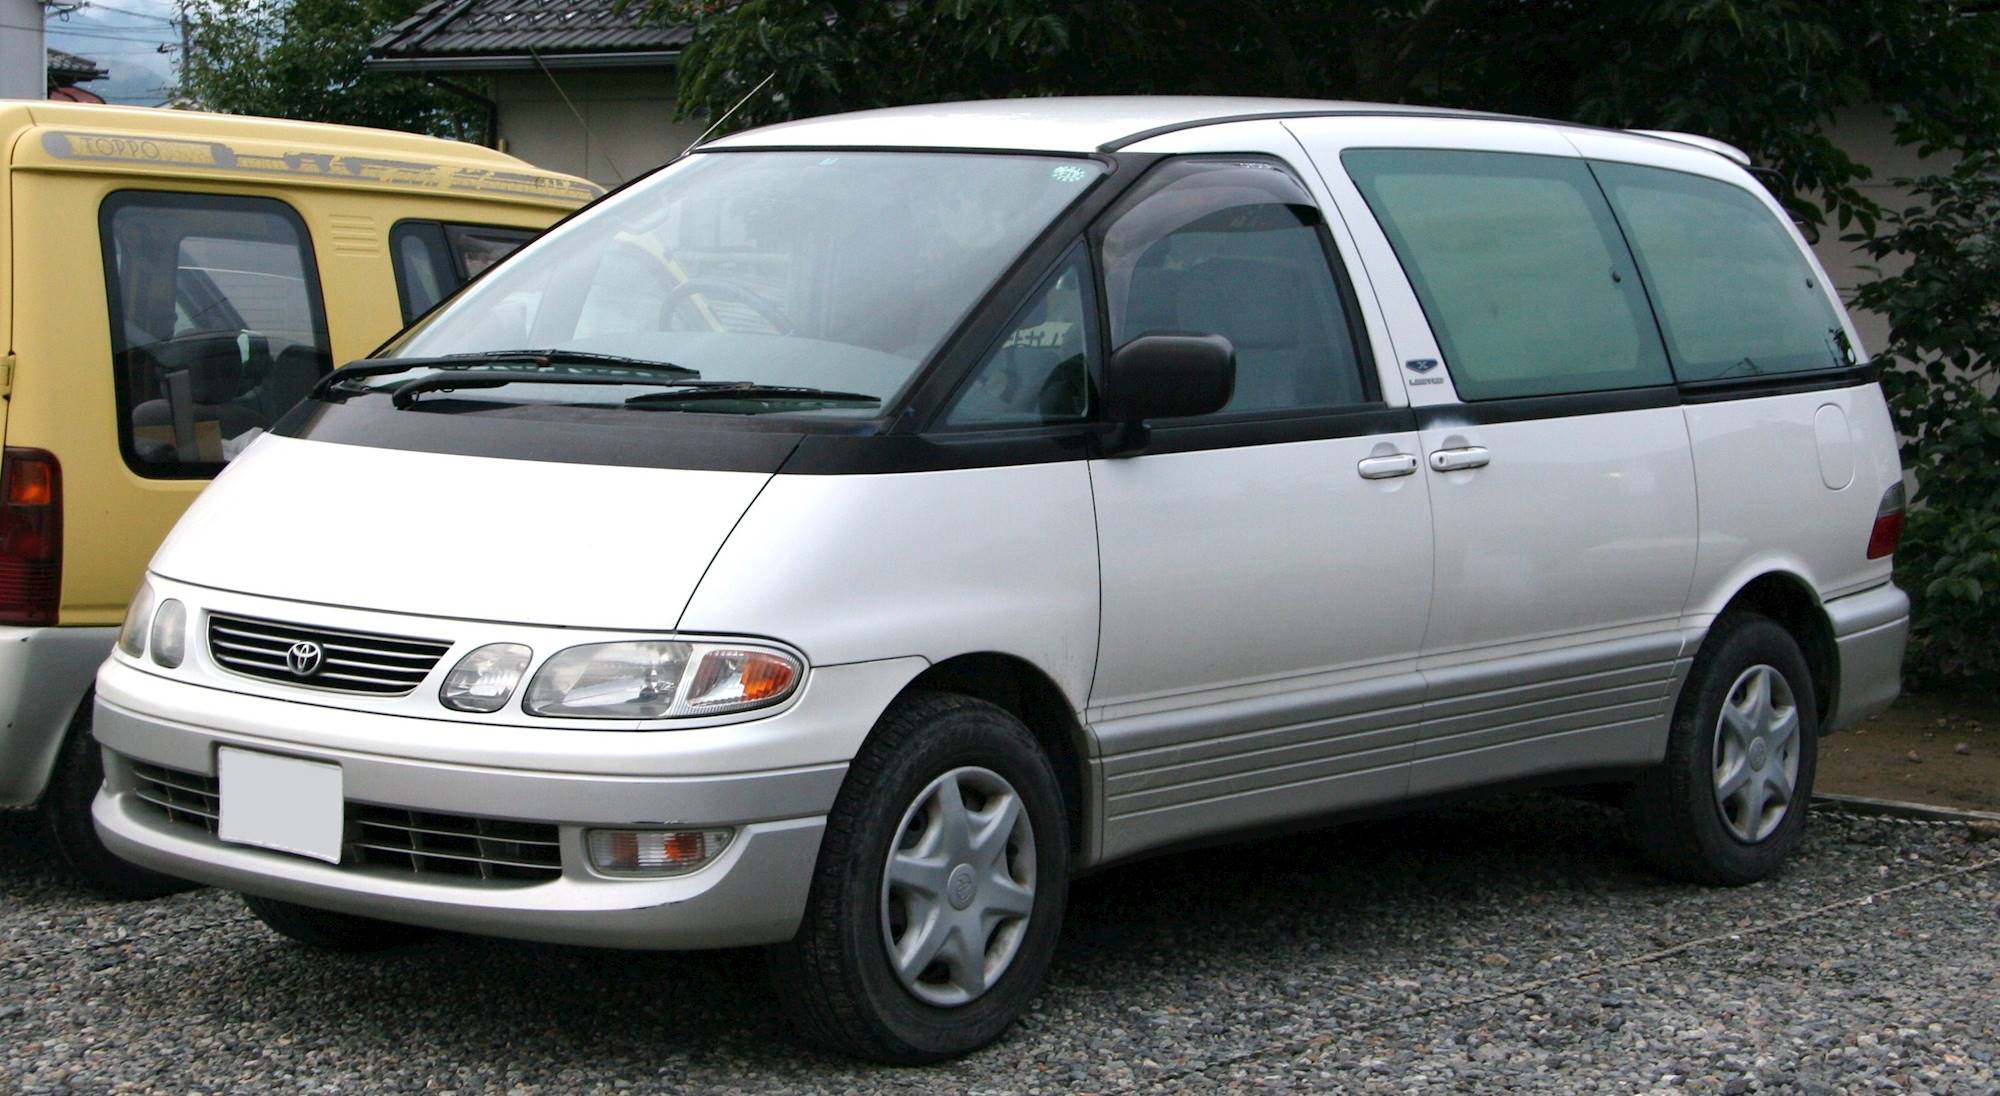 1996 Toyota Previa DX AllTrac Passenger Minivan 2.4L